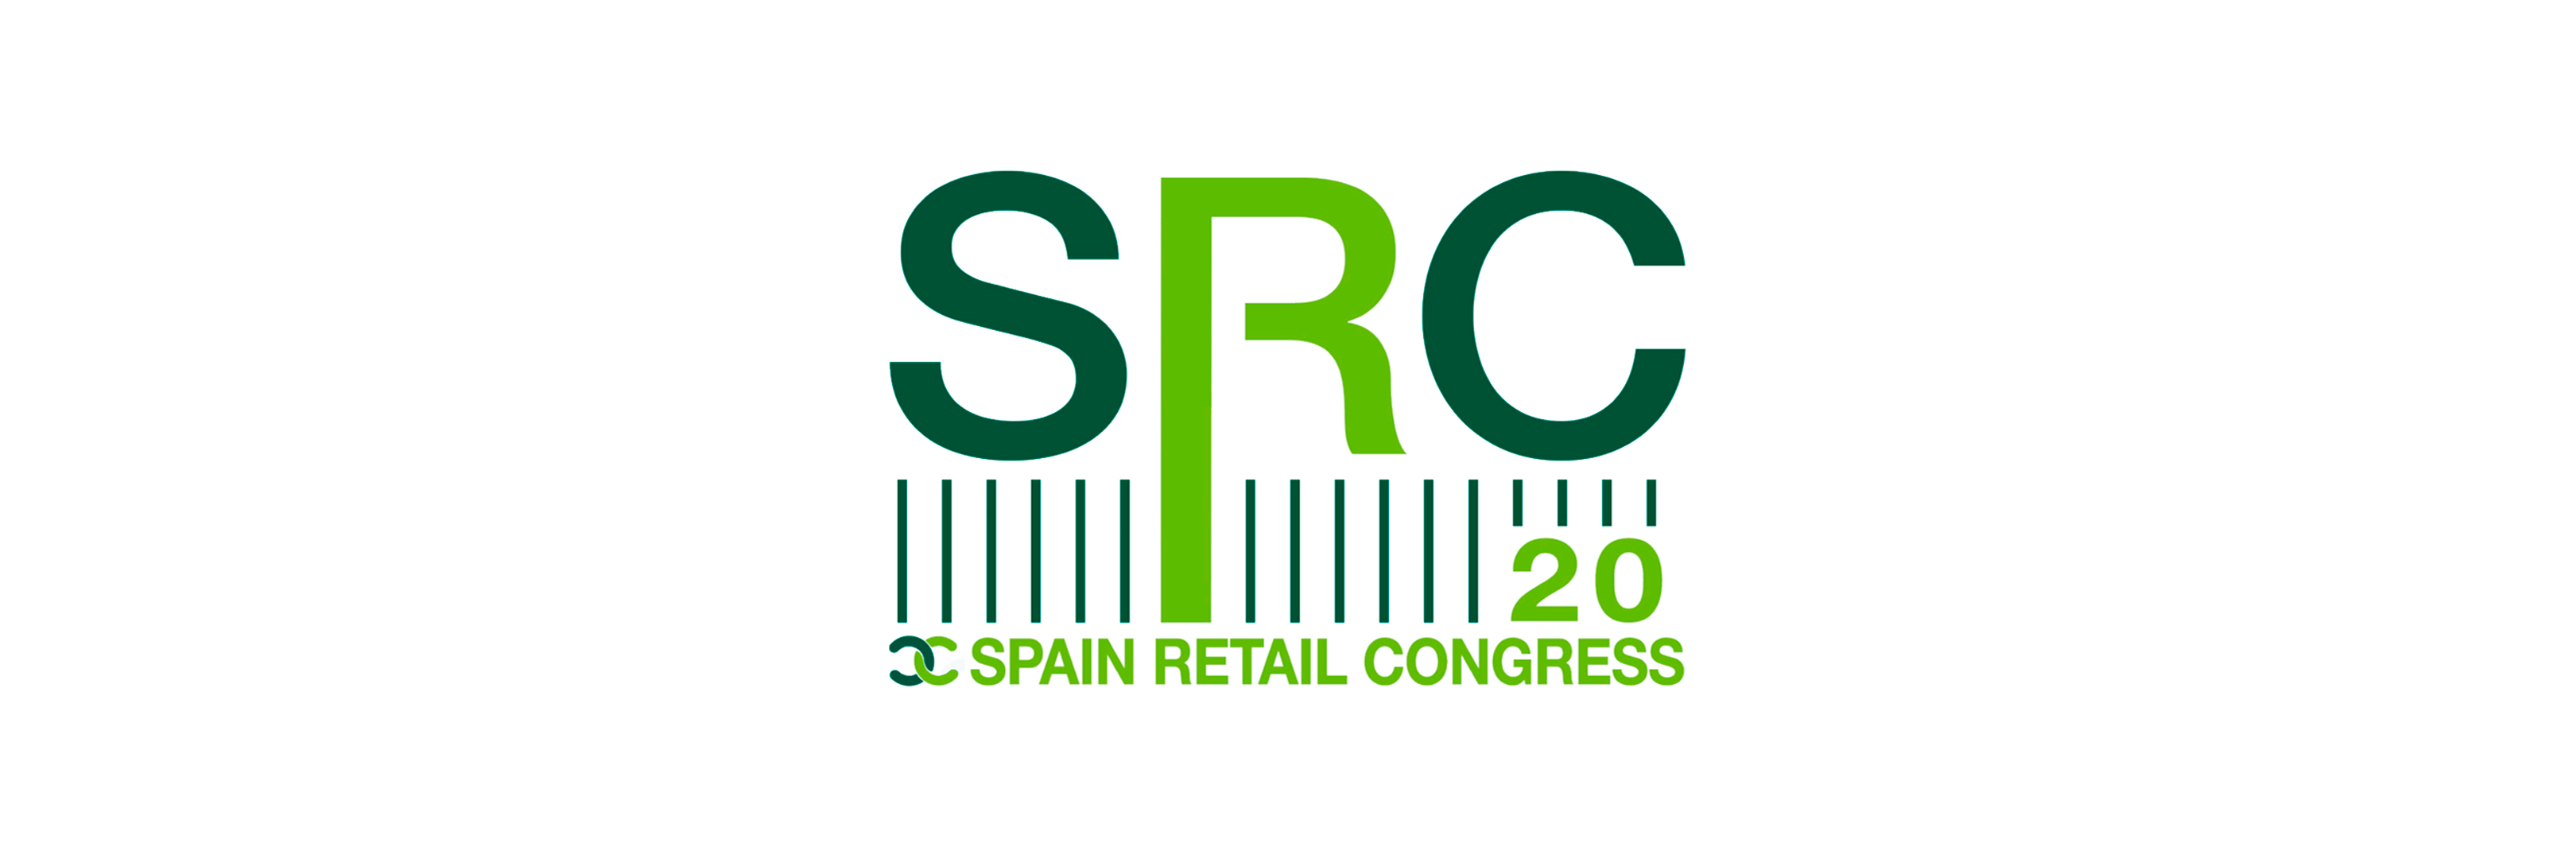 Eventos online y su gran eficacia: Spain Retail Congress